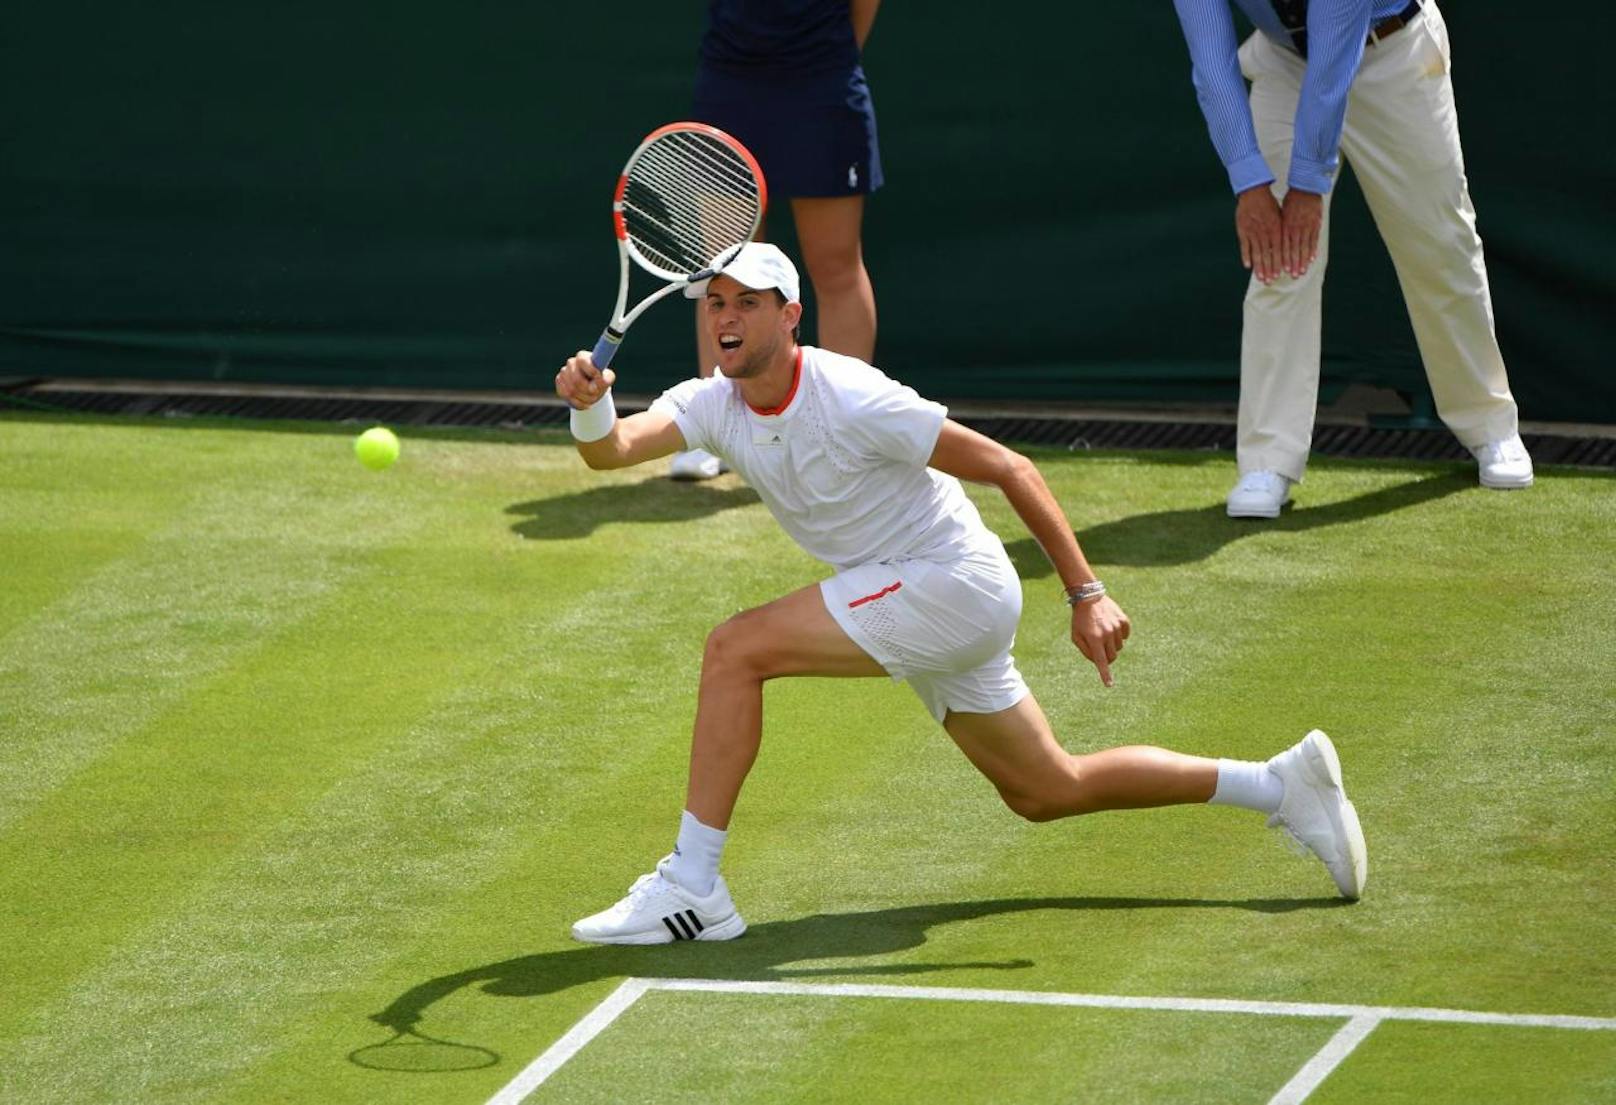 In Wimbledon läuft es gar nicht nach Wunsch, Thiem scheitert in der ersten Runde an Sam Querrey.